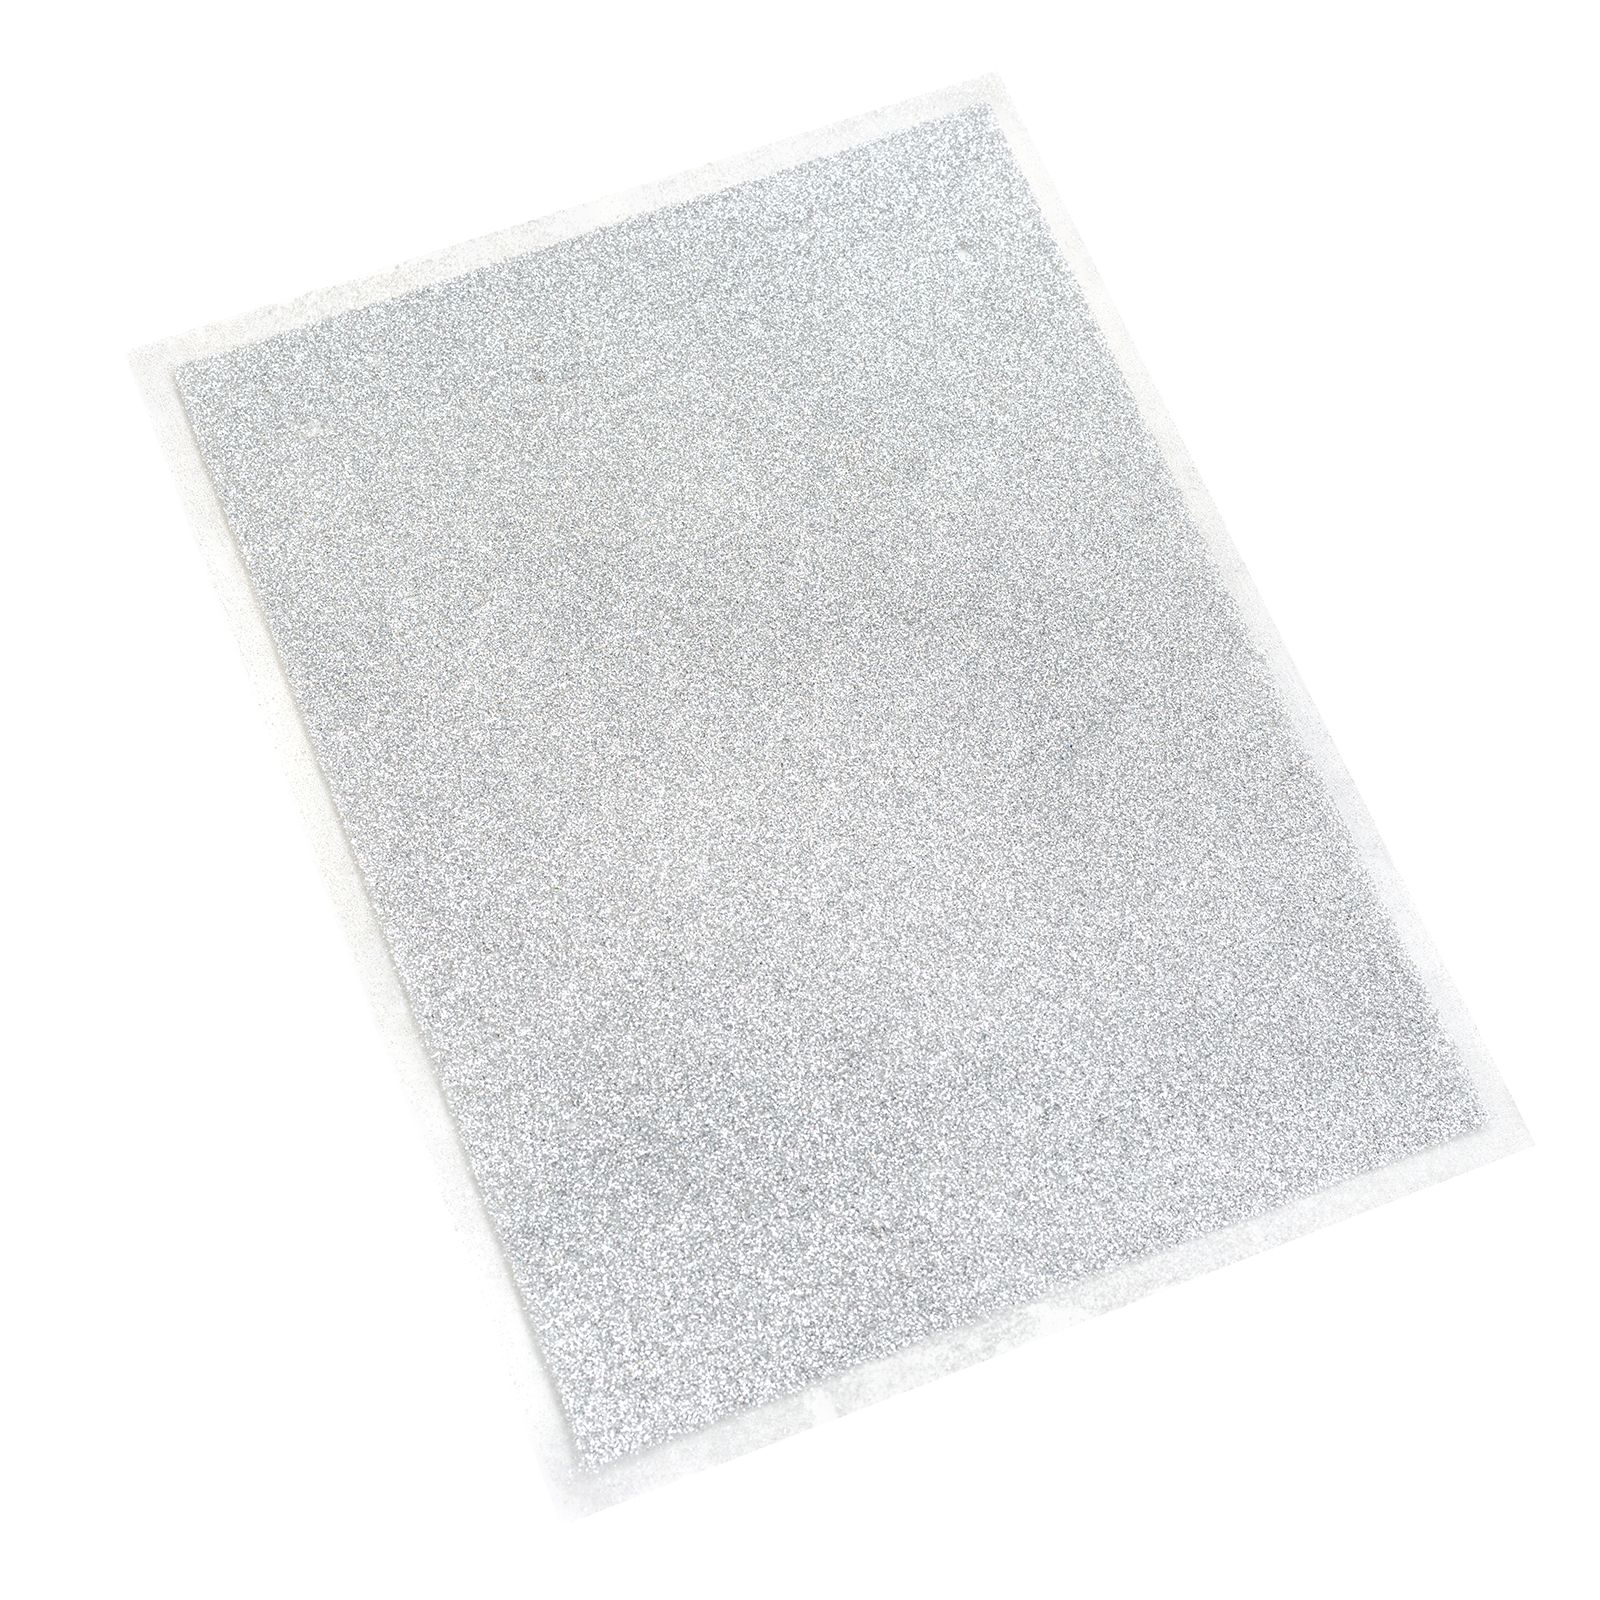 Heidi Swapp • Minc glitter sheets 6x8" Silver